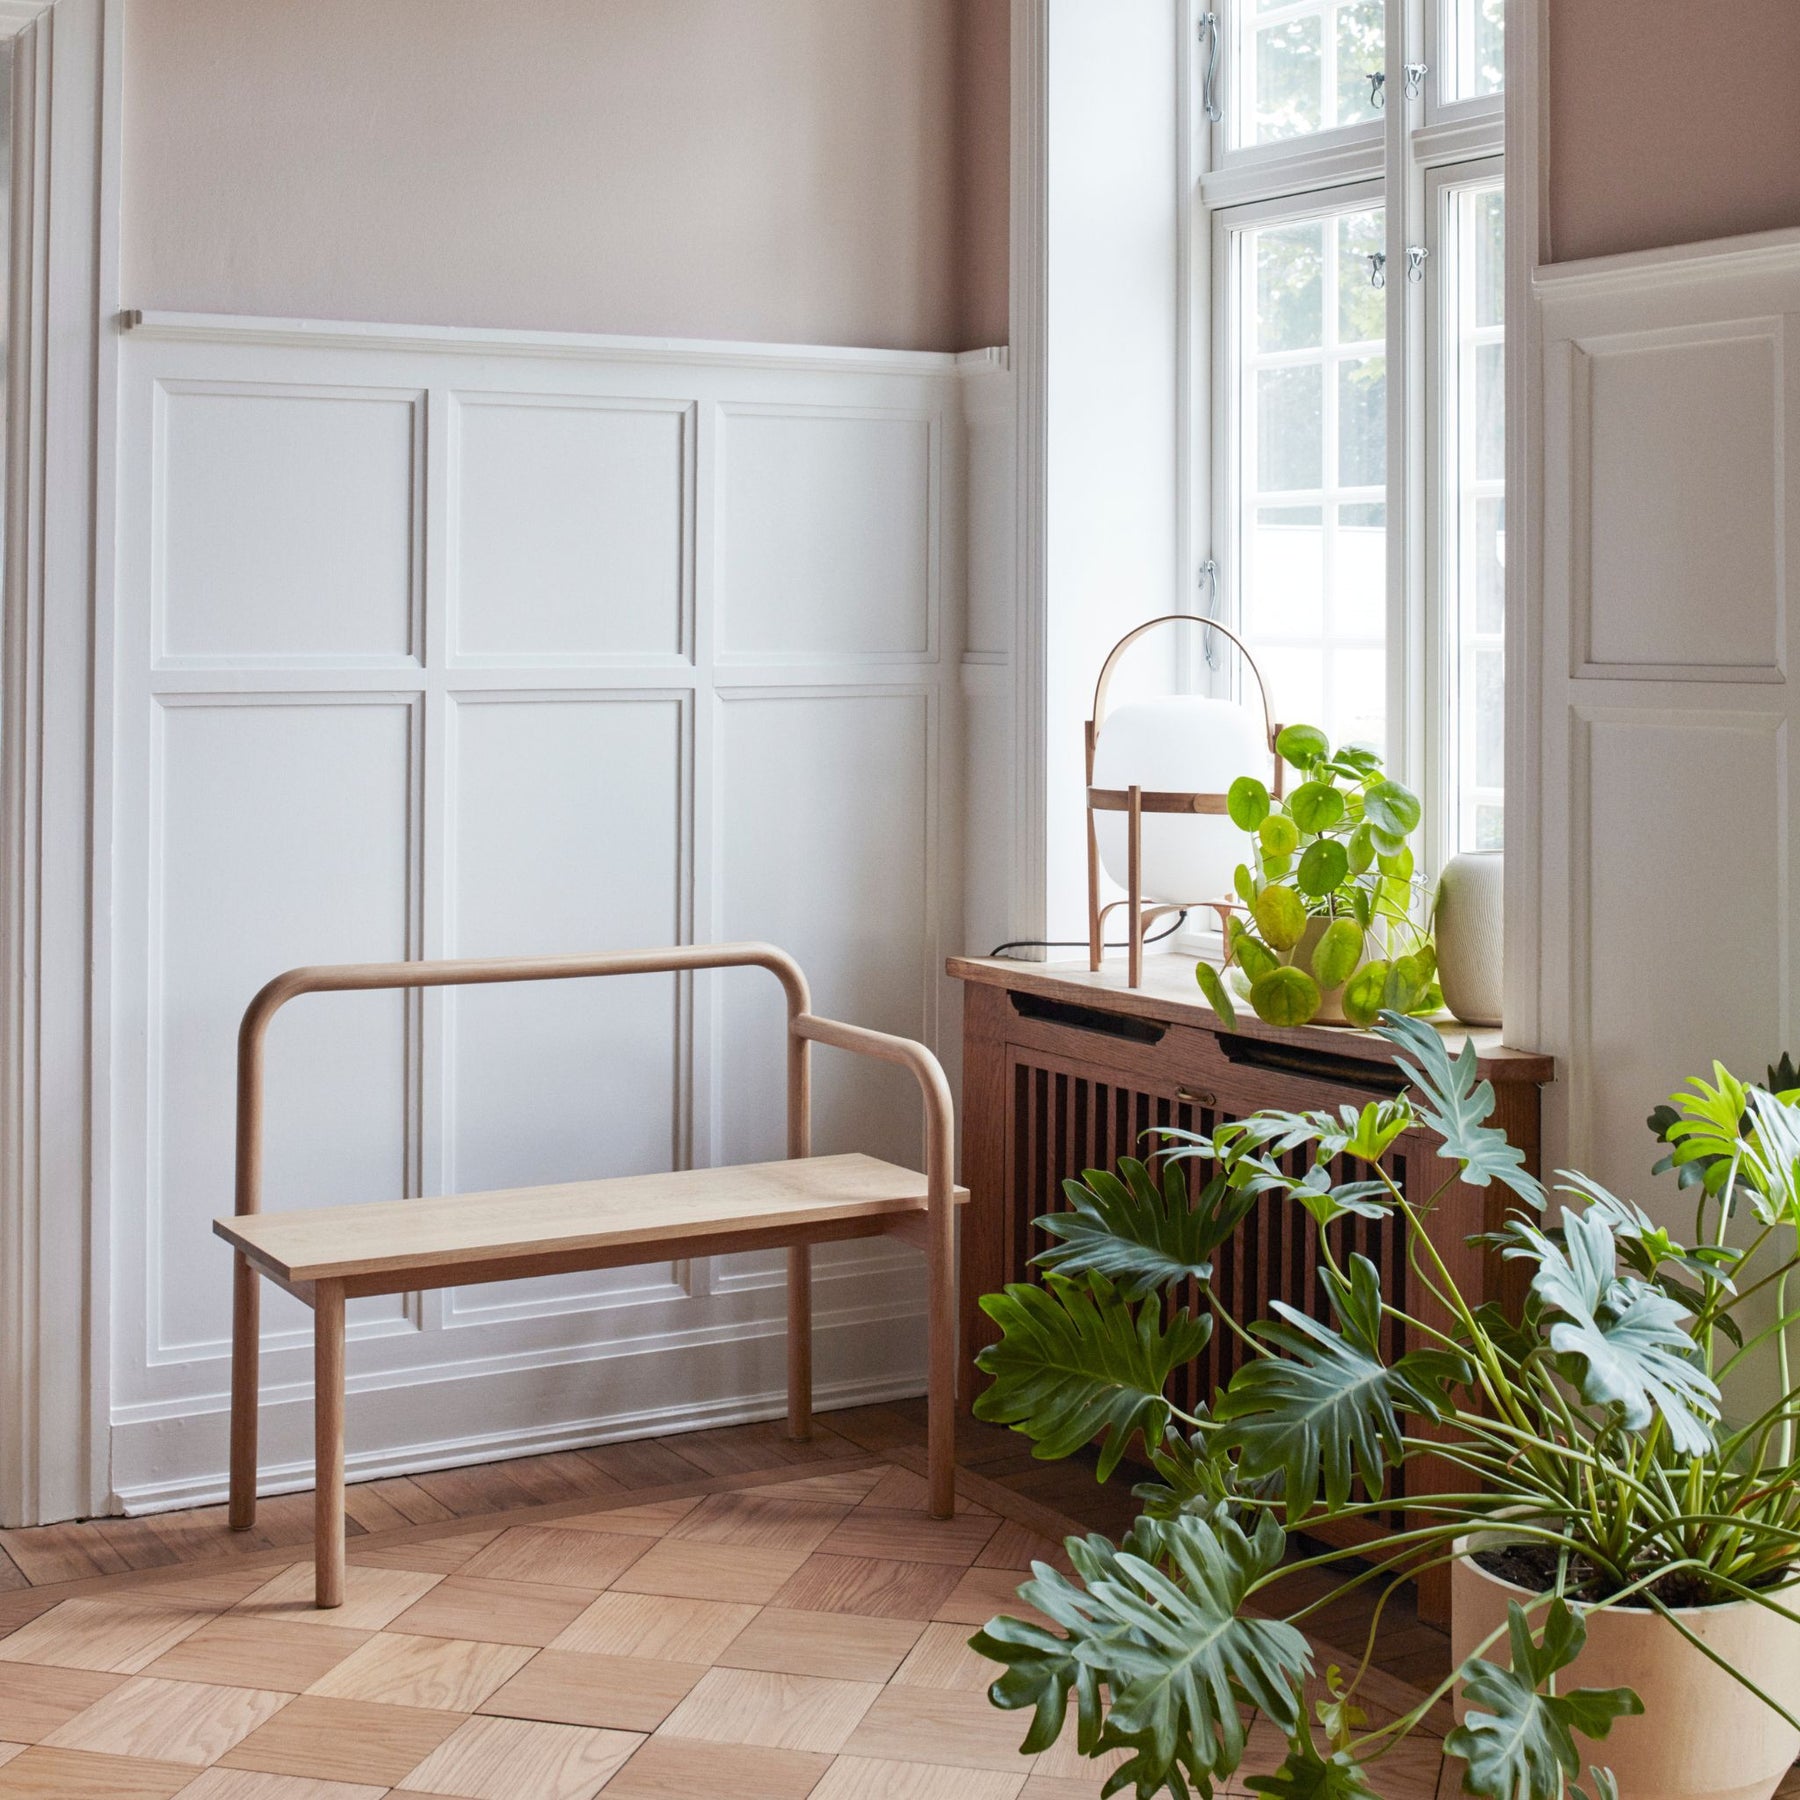 Fritz Hansen Skagerak Maissi Bench by Window in Copenhagen Apartment with Plants